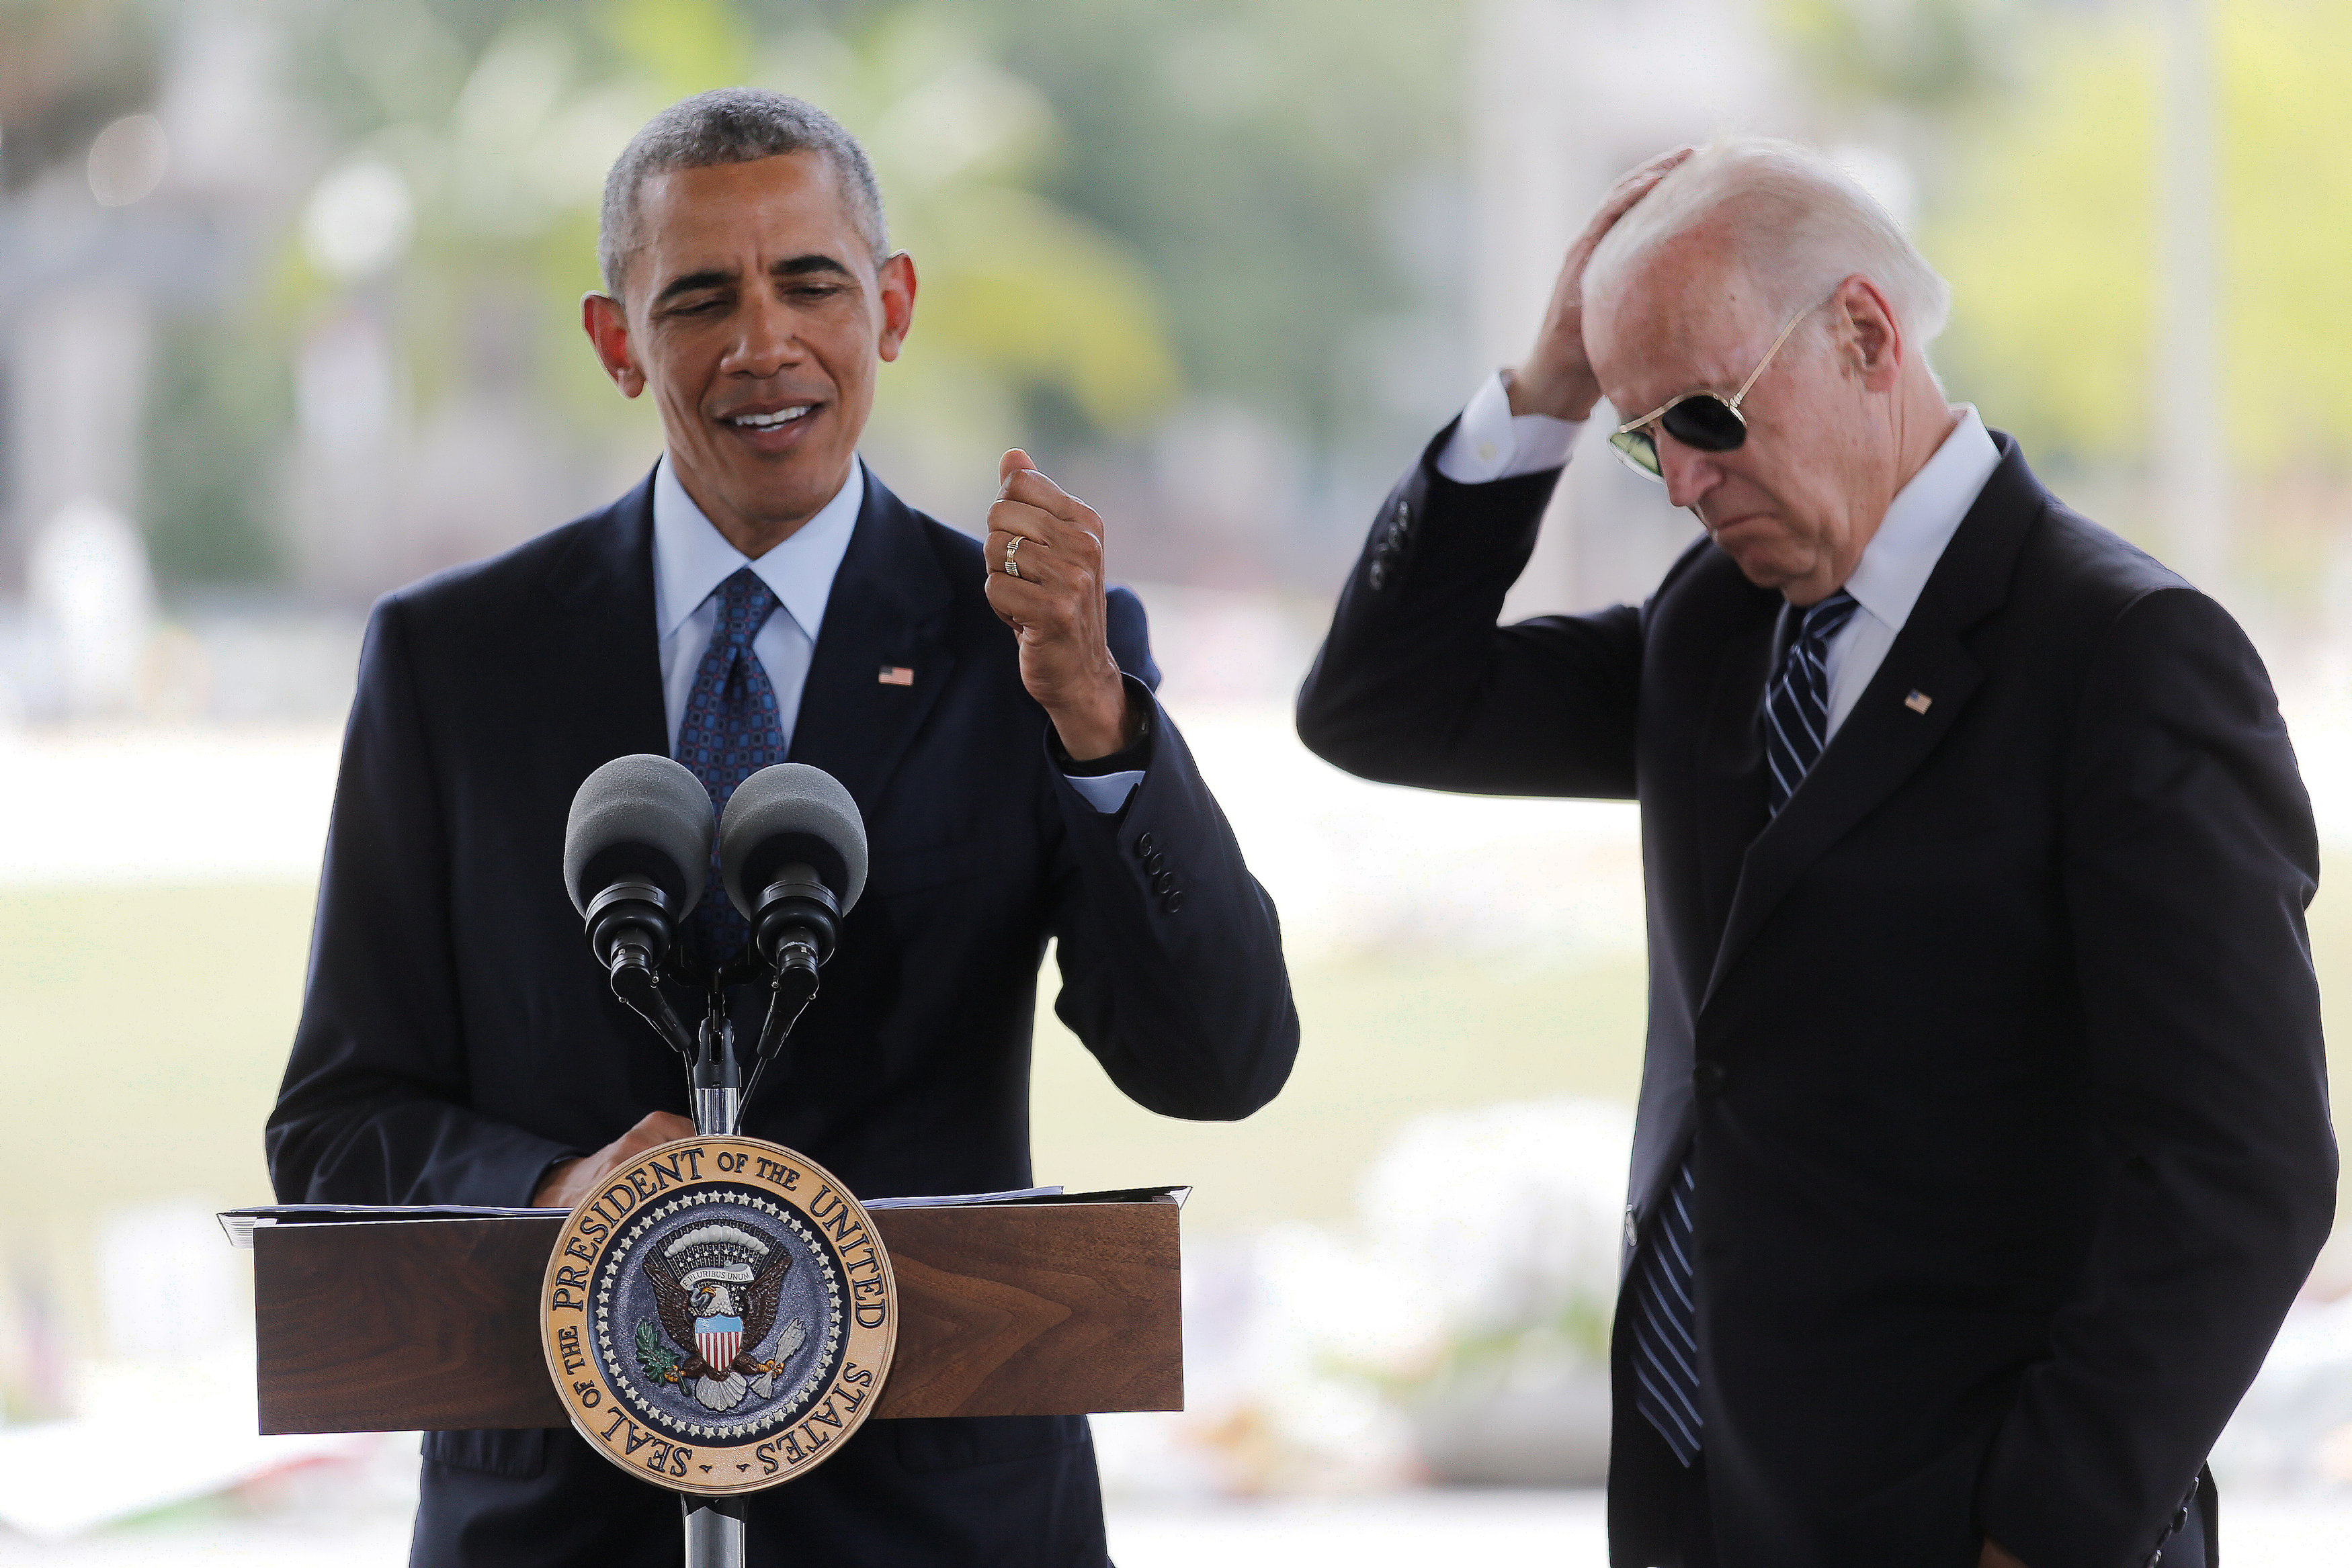 Obama anunciará su apoyo a Biden, según fuente cercana al expresidente